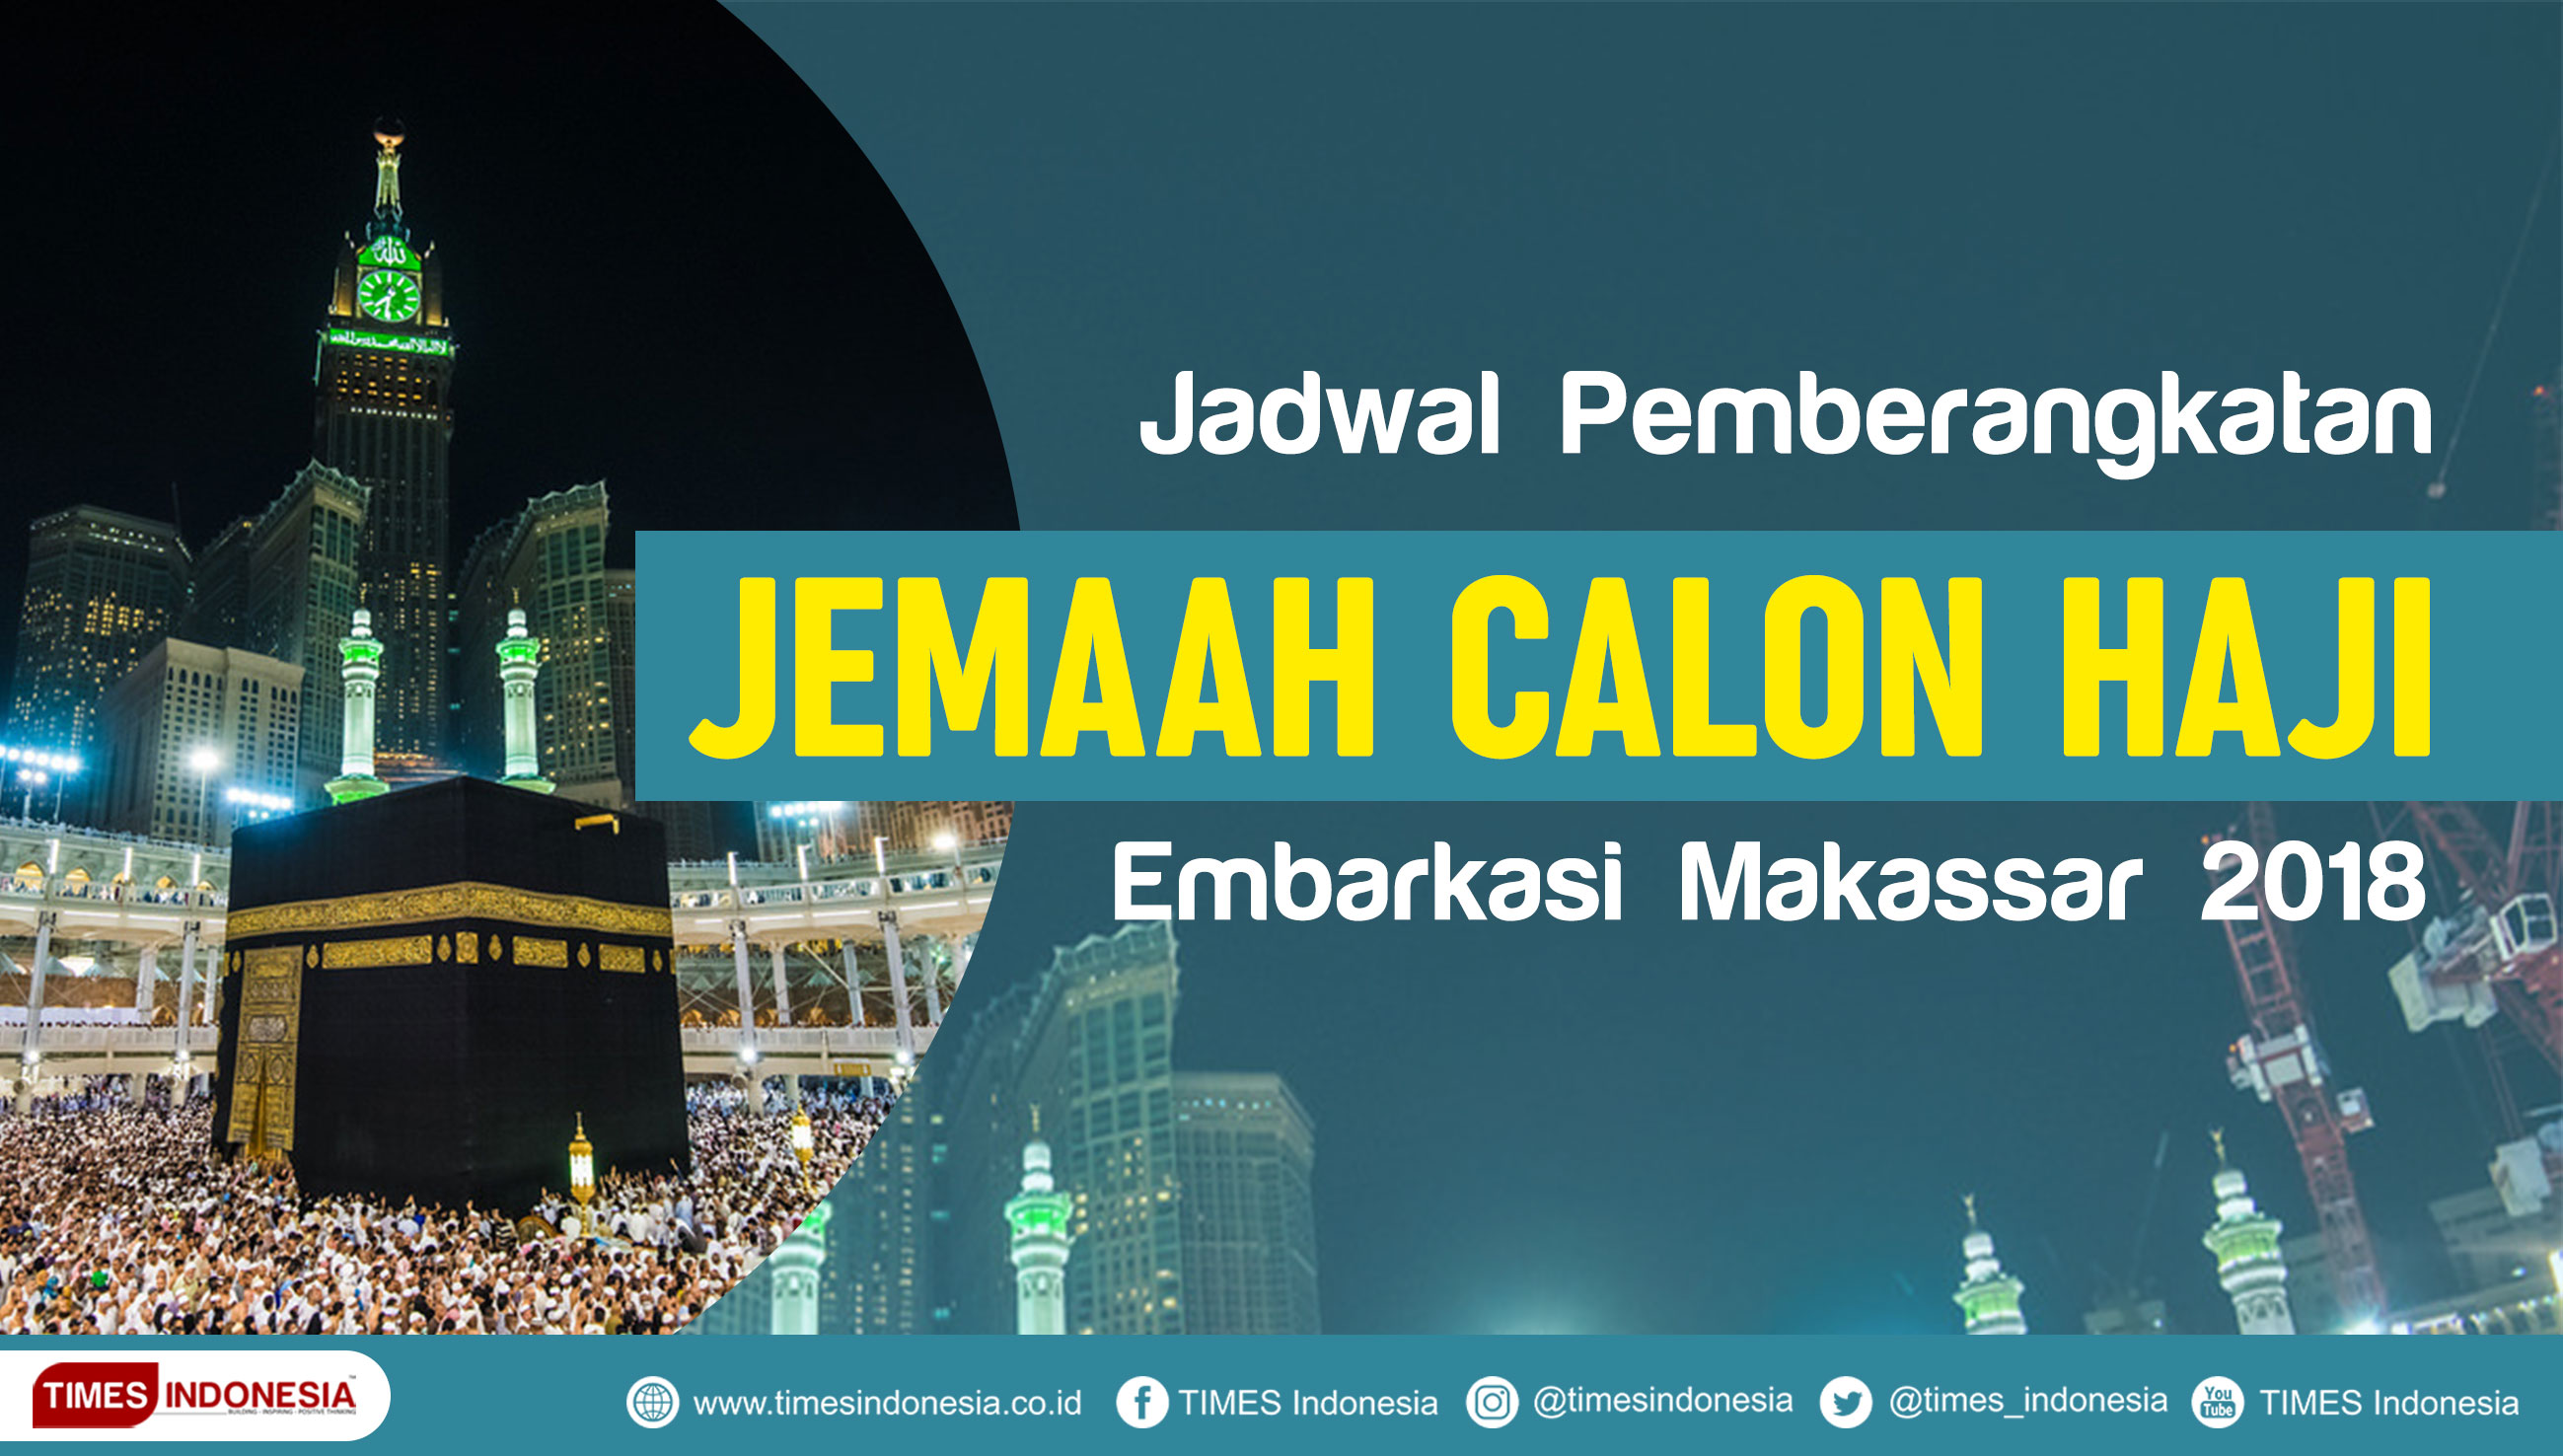 Jadwal Penerbangan Jemaah Calon Haji Embarkasi Makassar (FOTO: TIMES Indonesia)